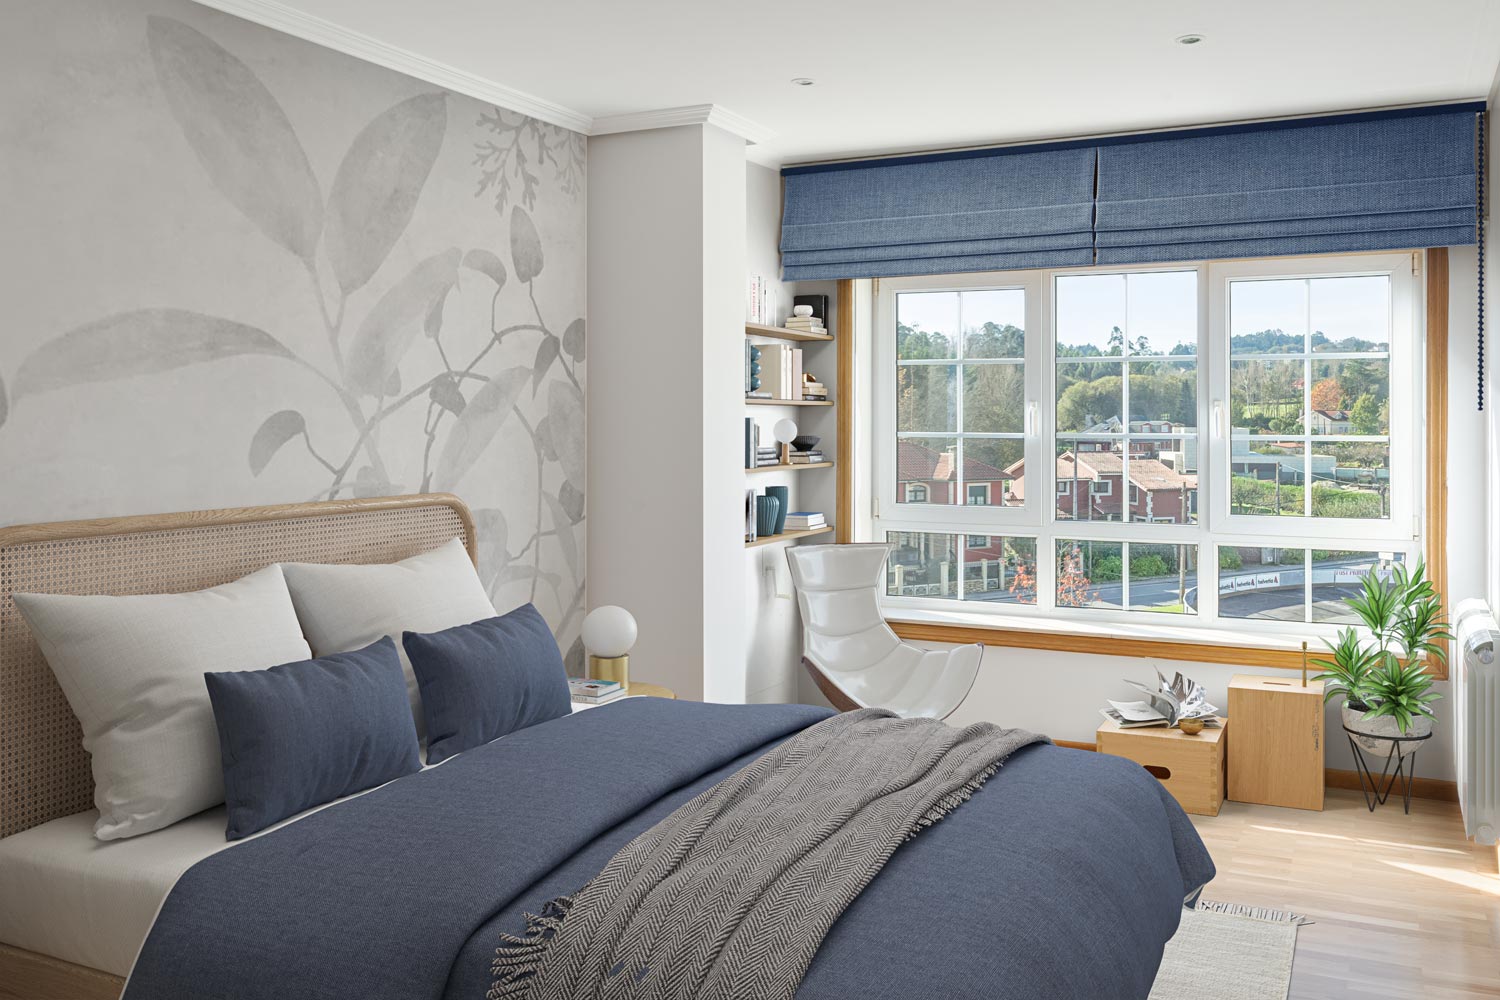 Vista interior de habitación en Sada con diseño de Home Staging, destacando elegancia en tonos azules y grises, cama con cabecero de ratán y vista panorámica a través de una ventana amplia